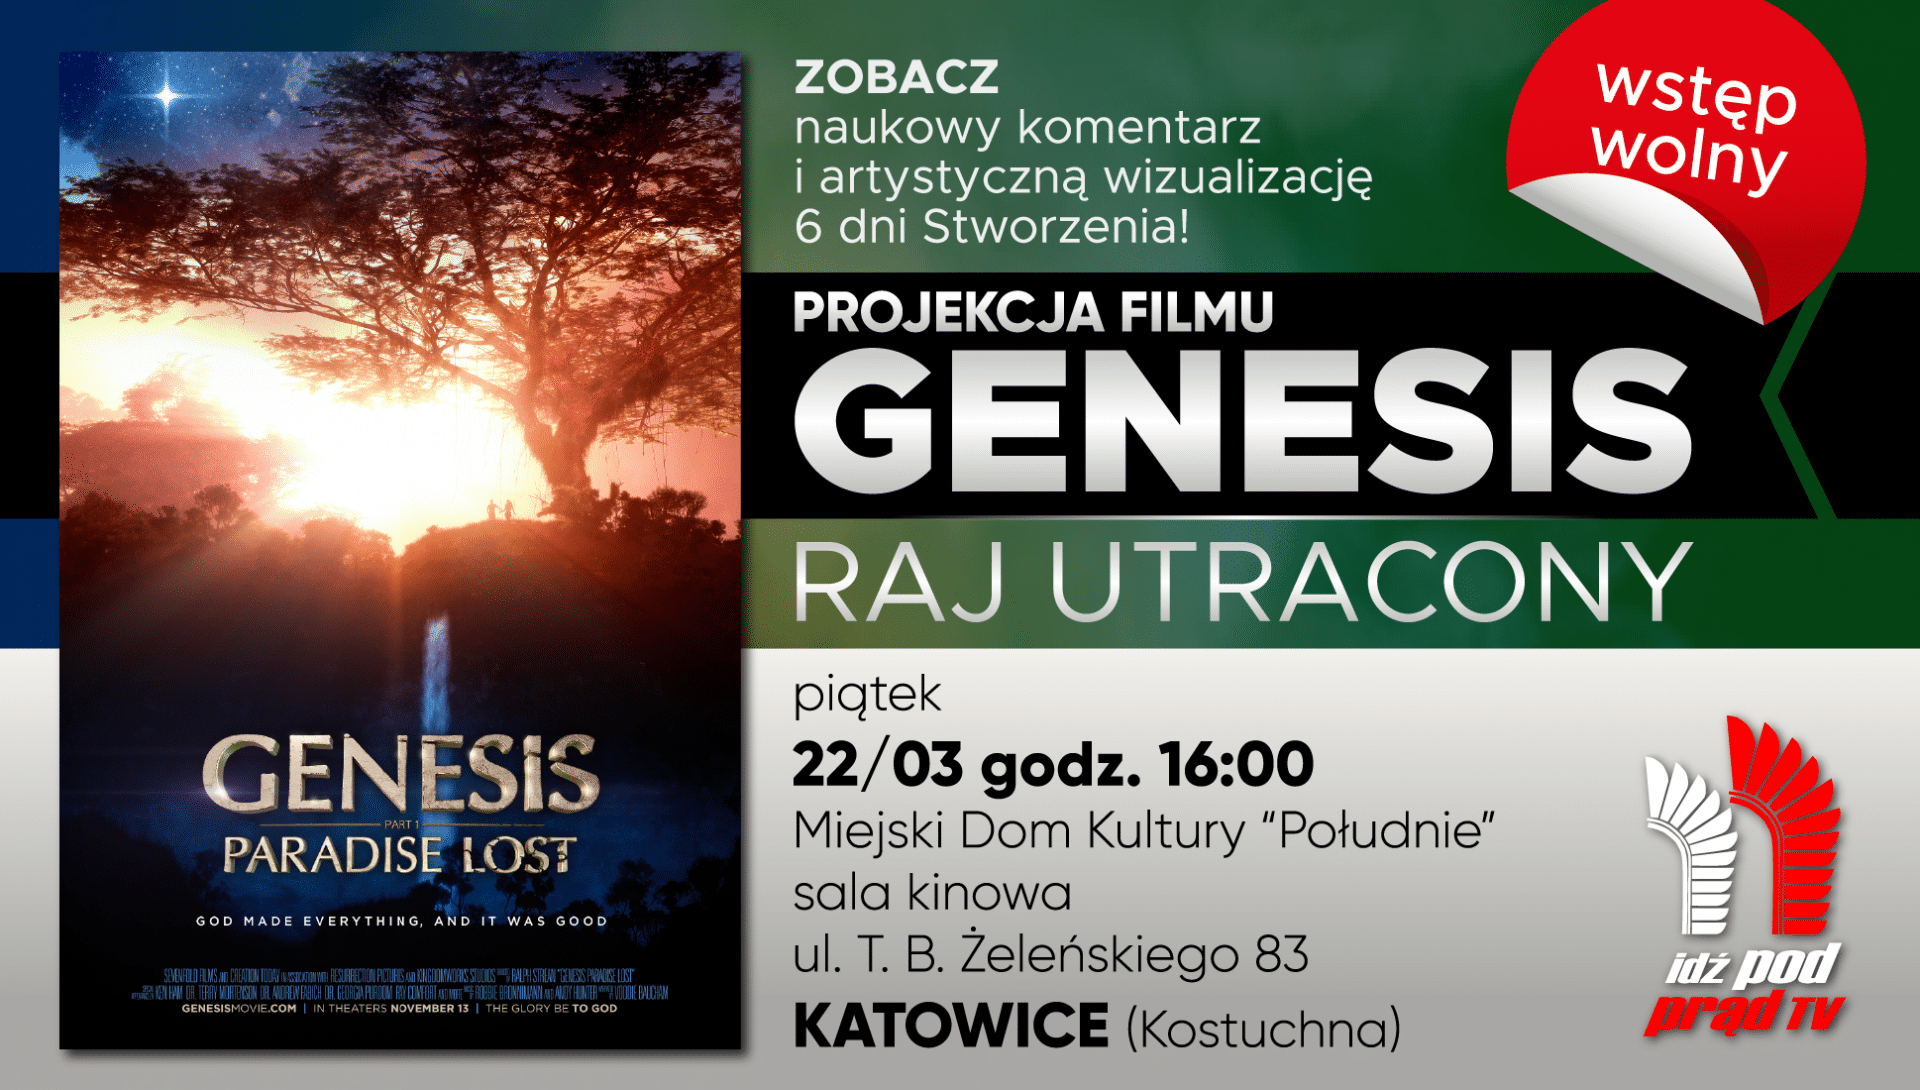 22/03/2019, KATOWICE: Genesis – Raj utracony – bezpłatna projekcja filmu